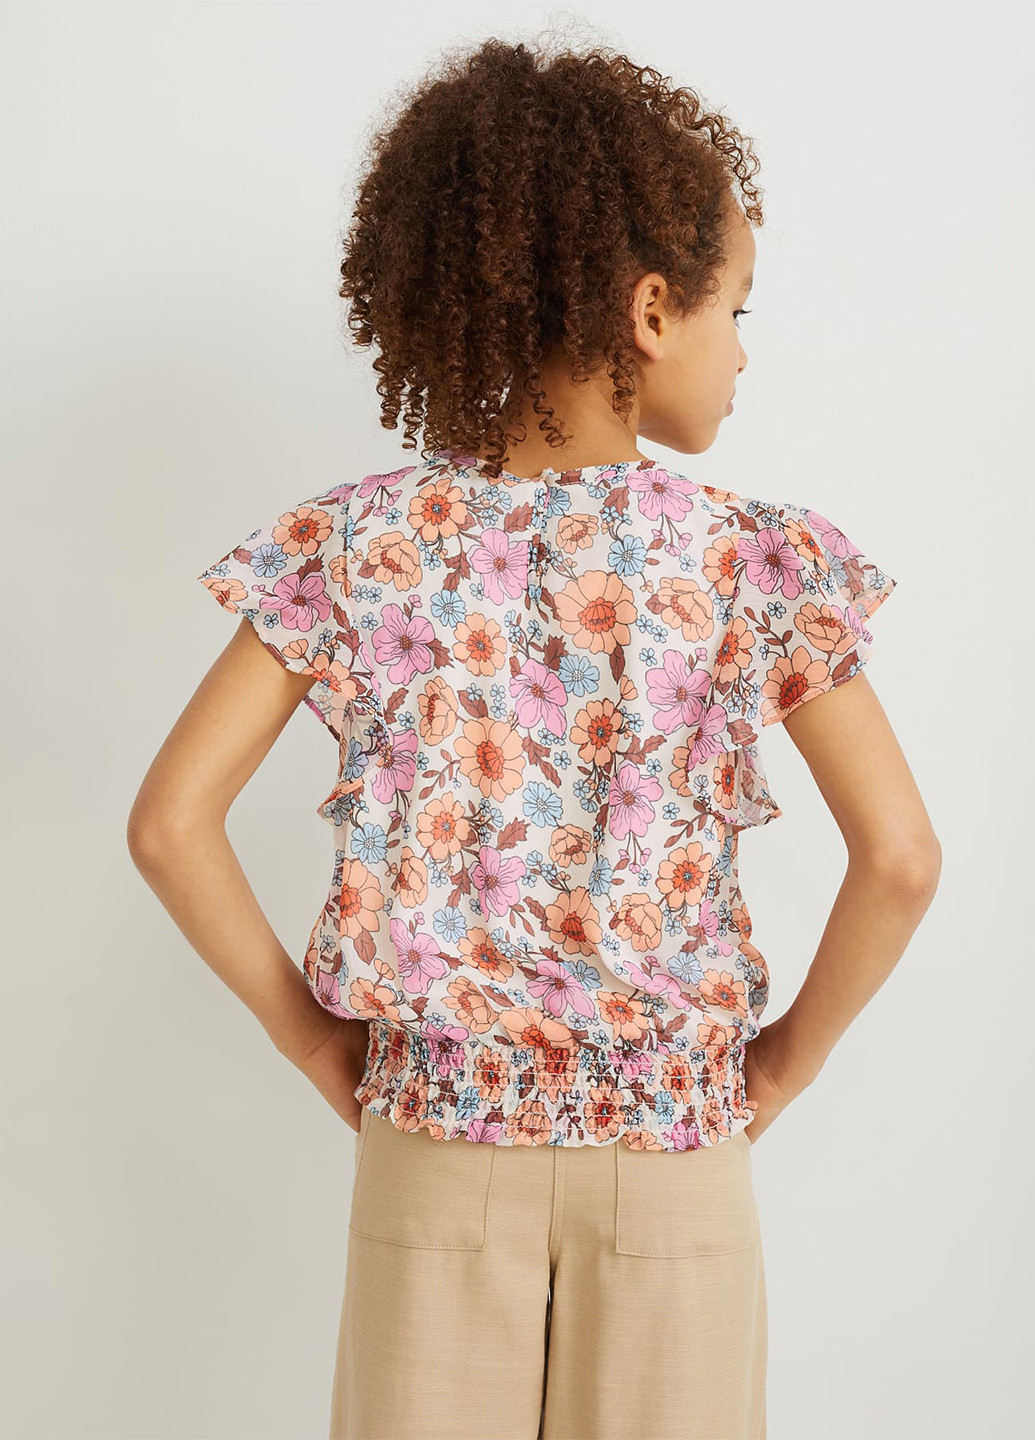 Молочная цветочной расцветки блузка C&A летняя